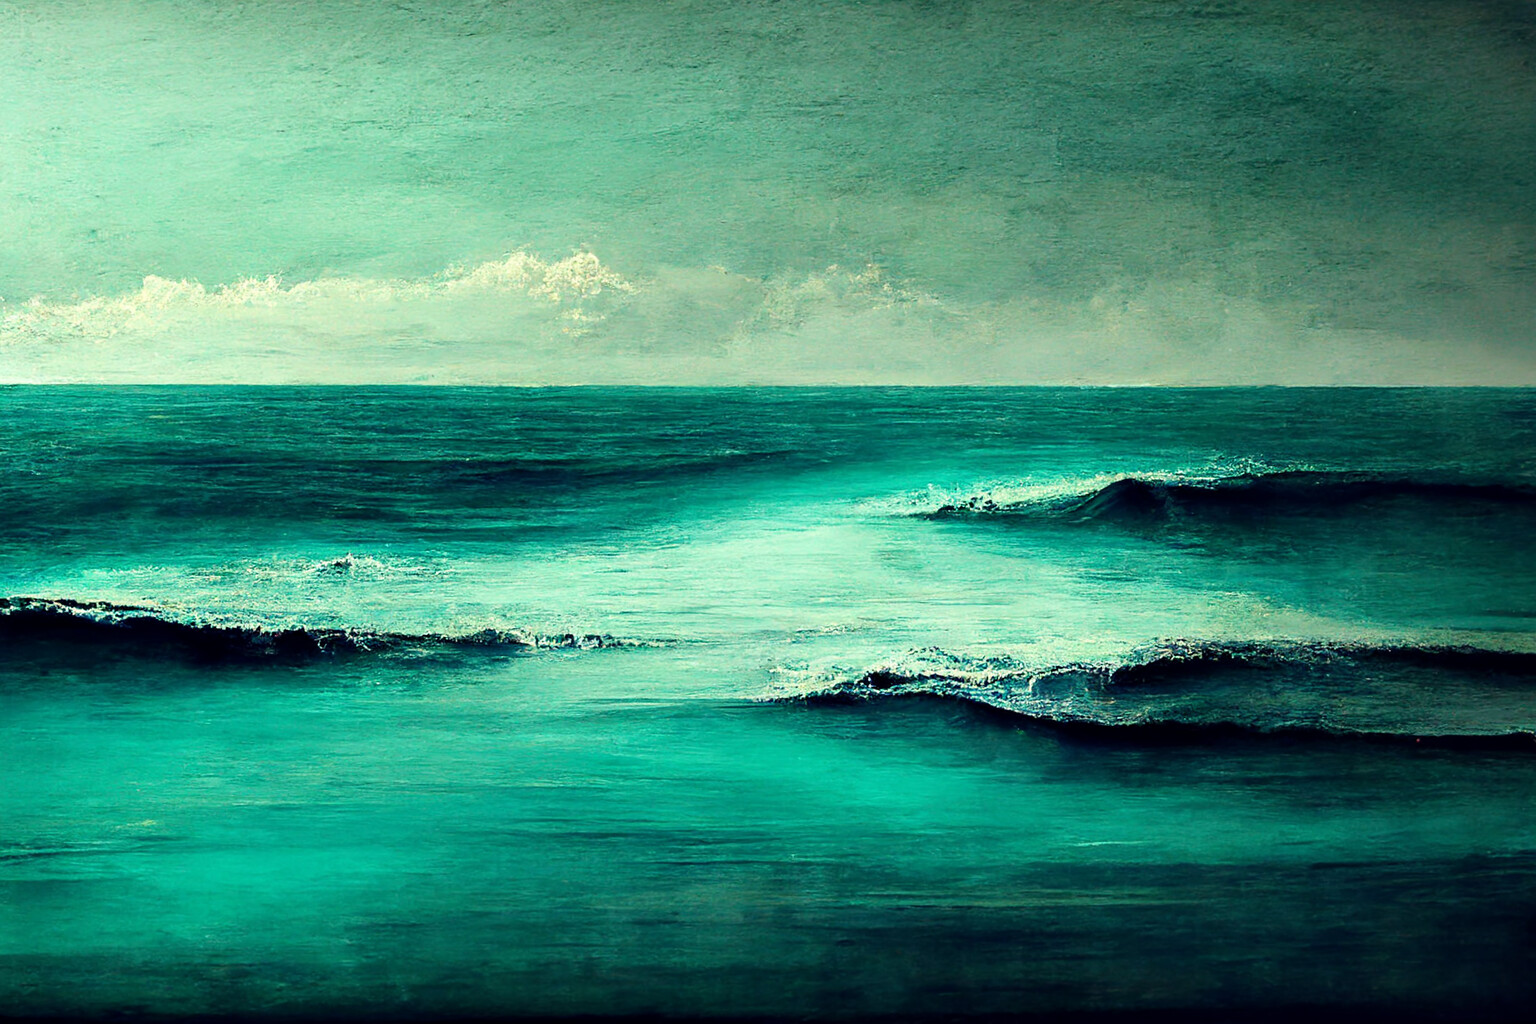 ArtStation - Ocean waves